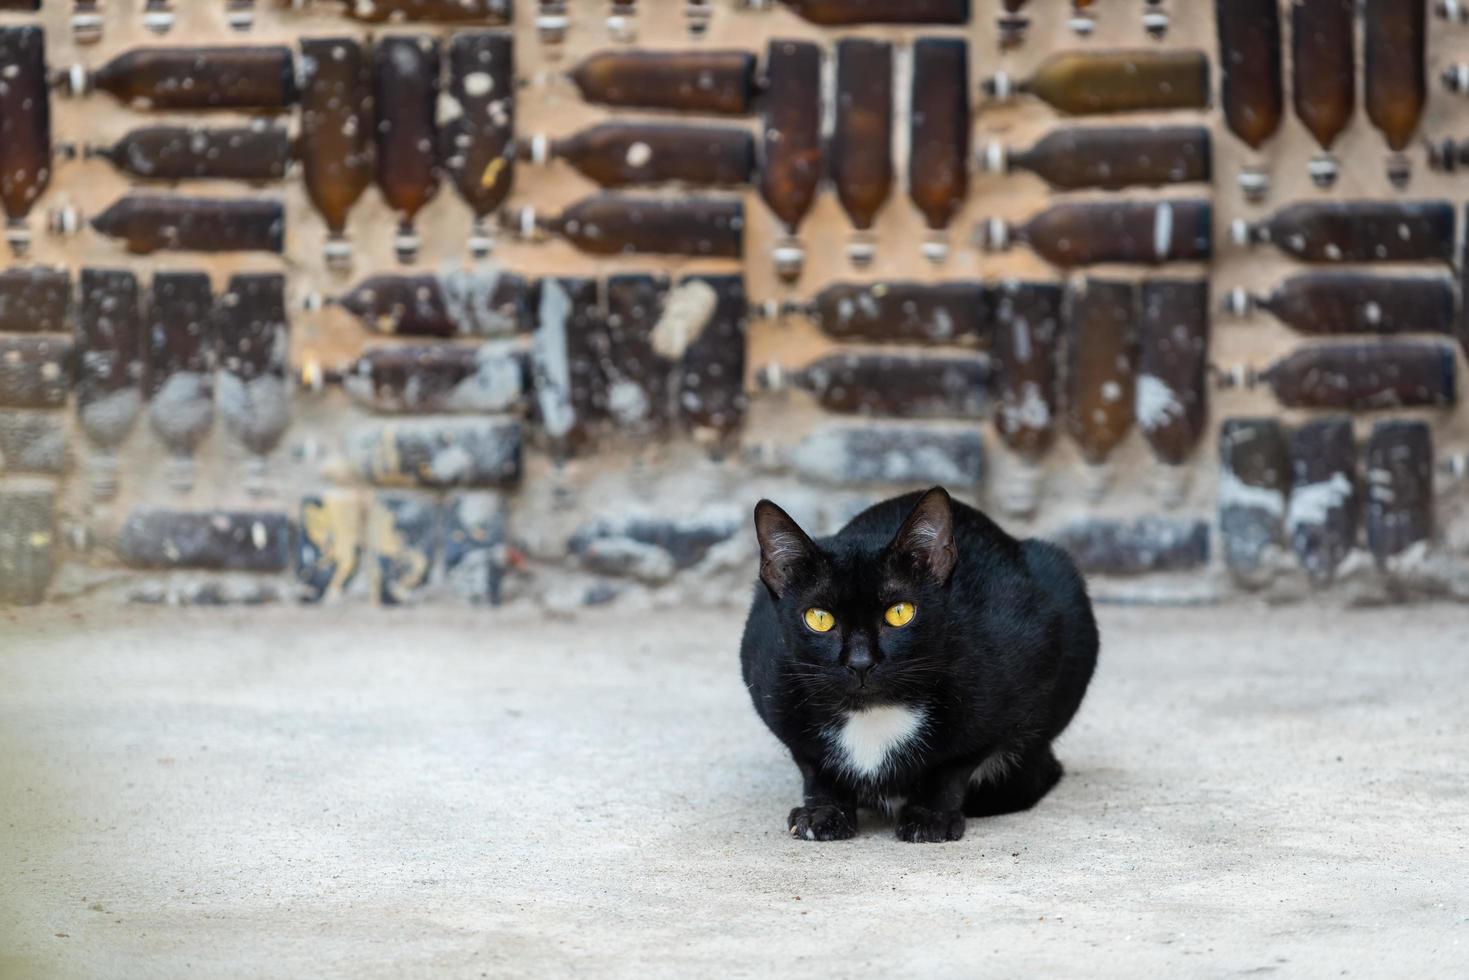 zwarte kat met gele ogen die naar de achtergrond van de flesmuur staren. foto